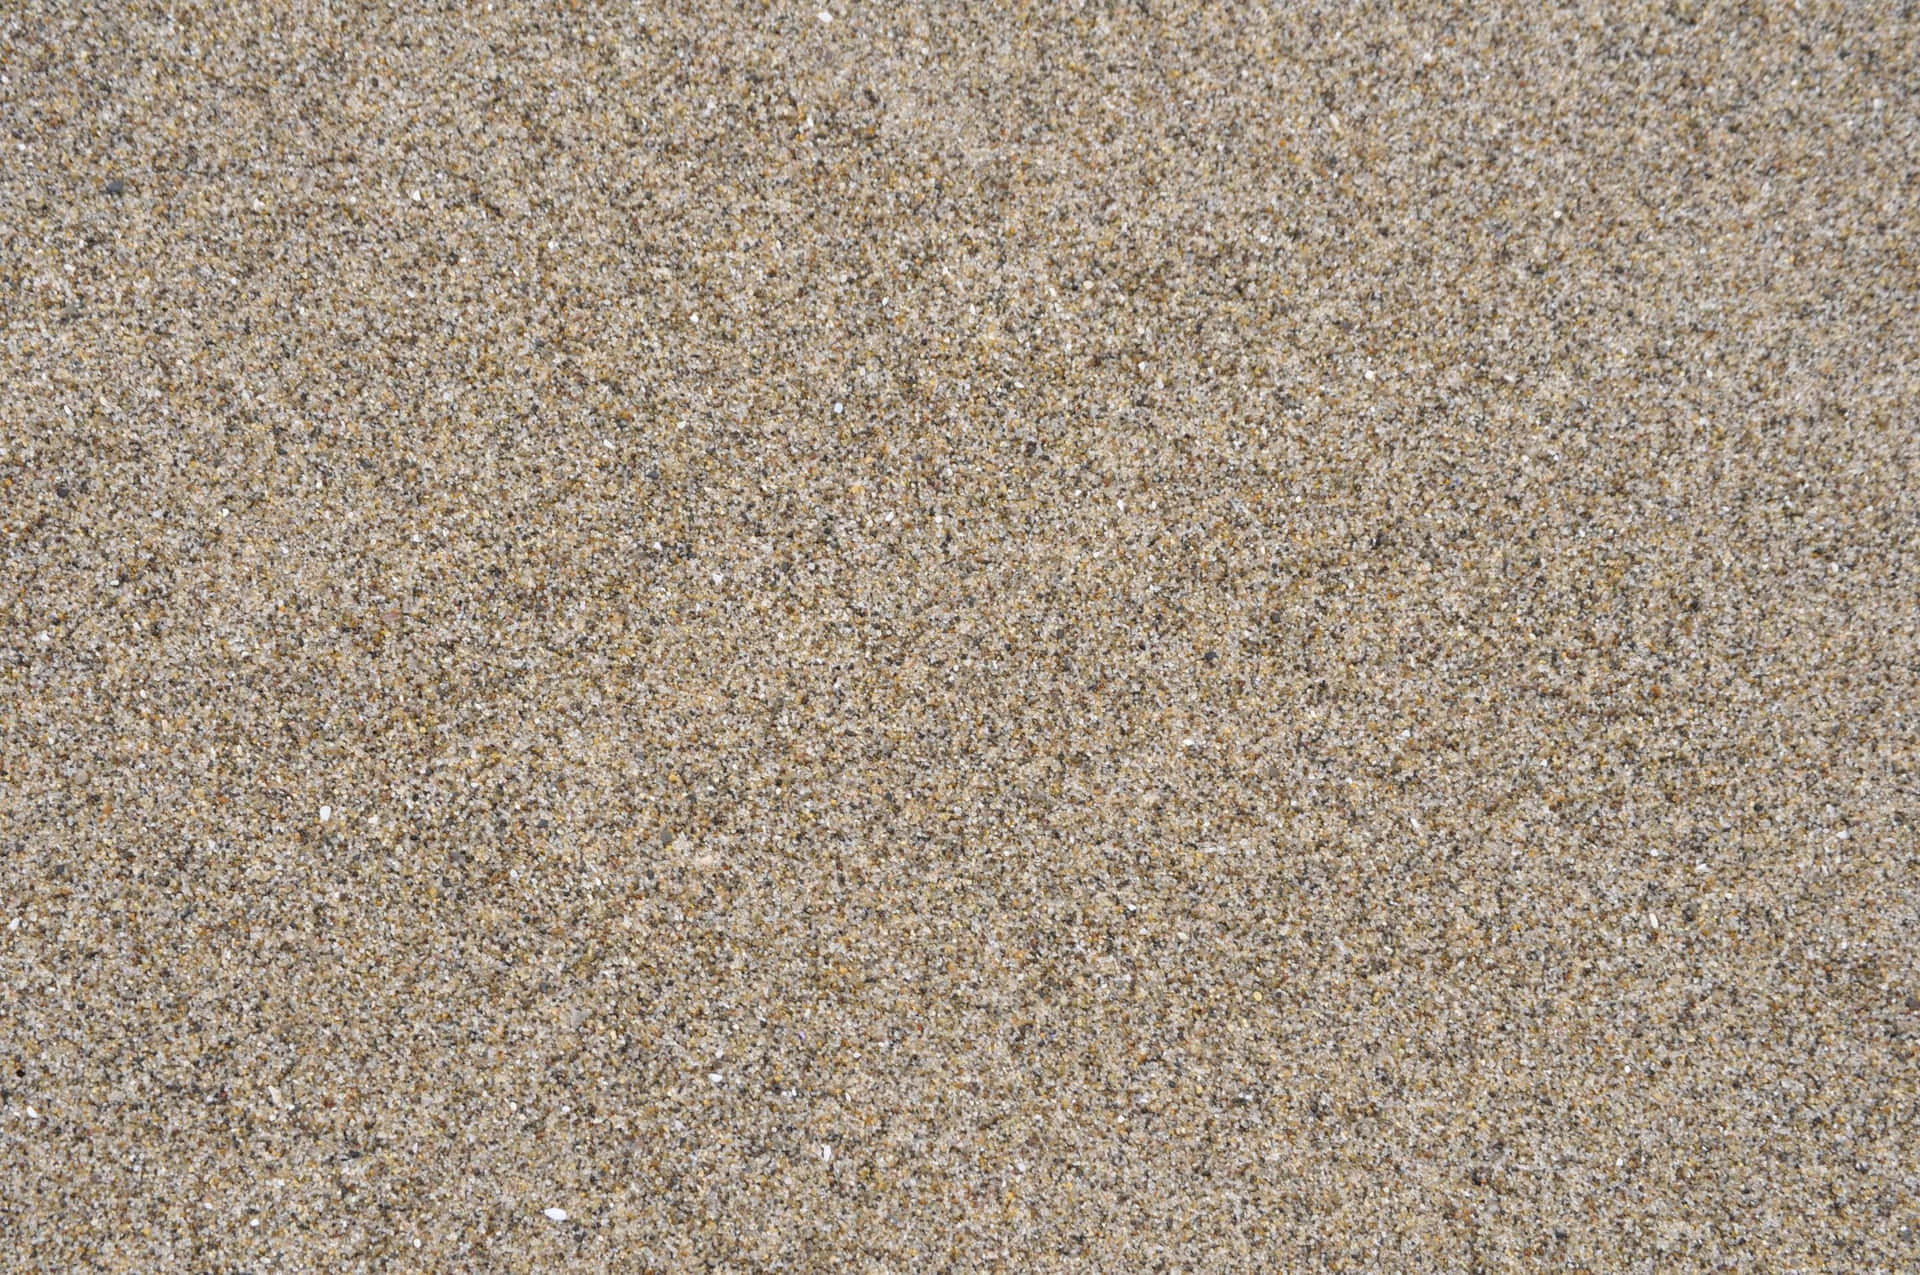 Unaspiaggia Di Sabbia Con Un Piccolo Castello Di Sabbia Bianca